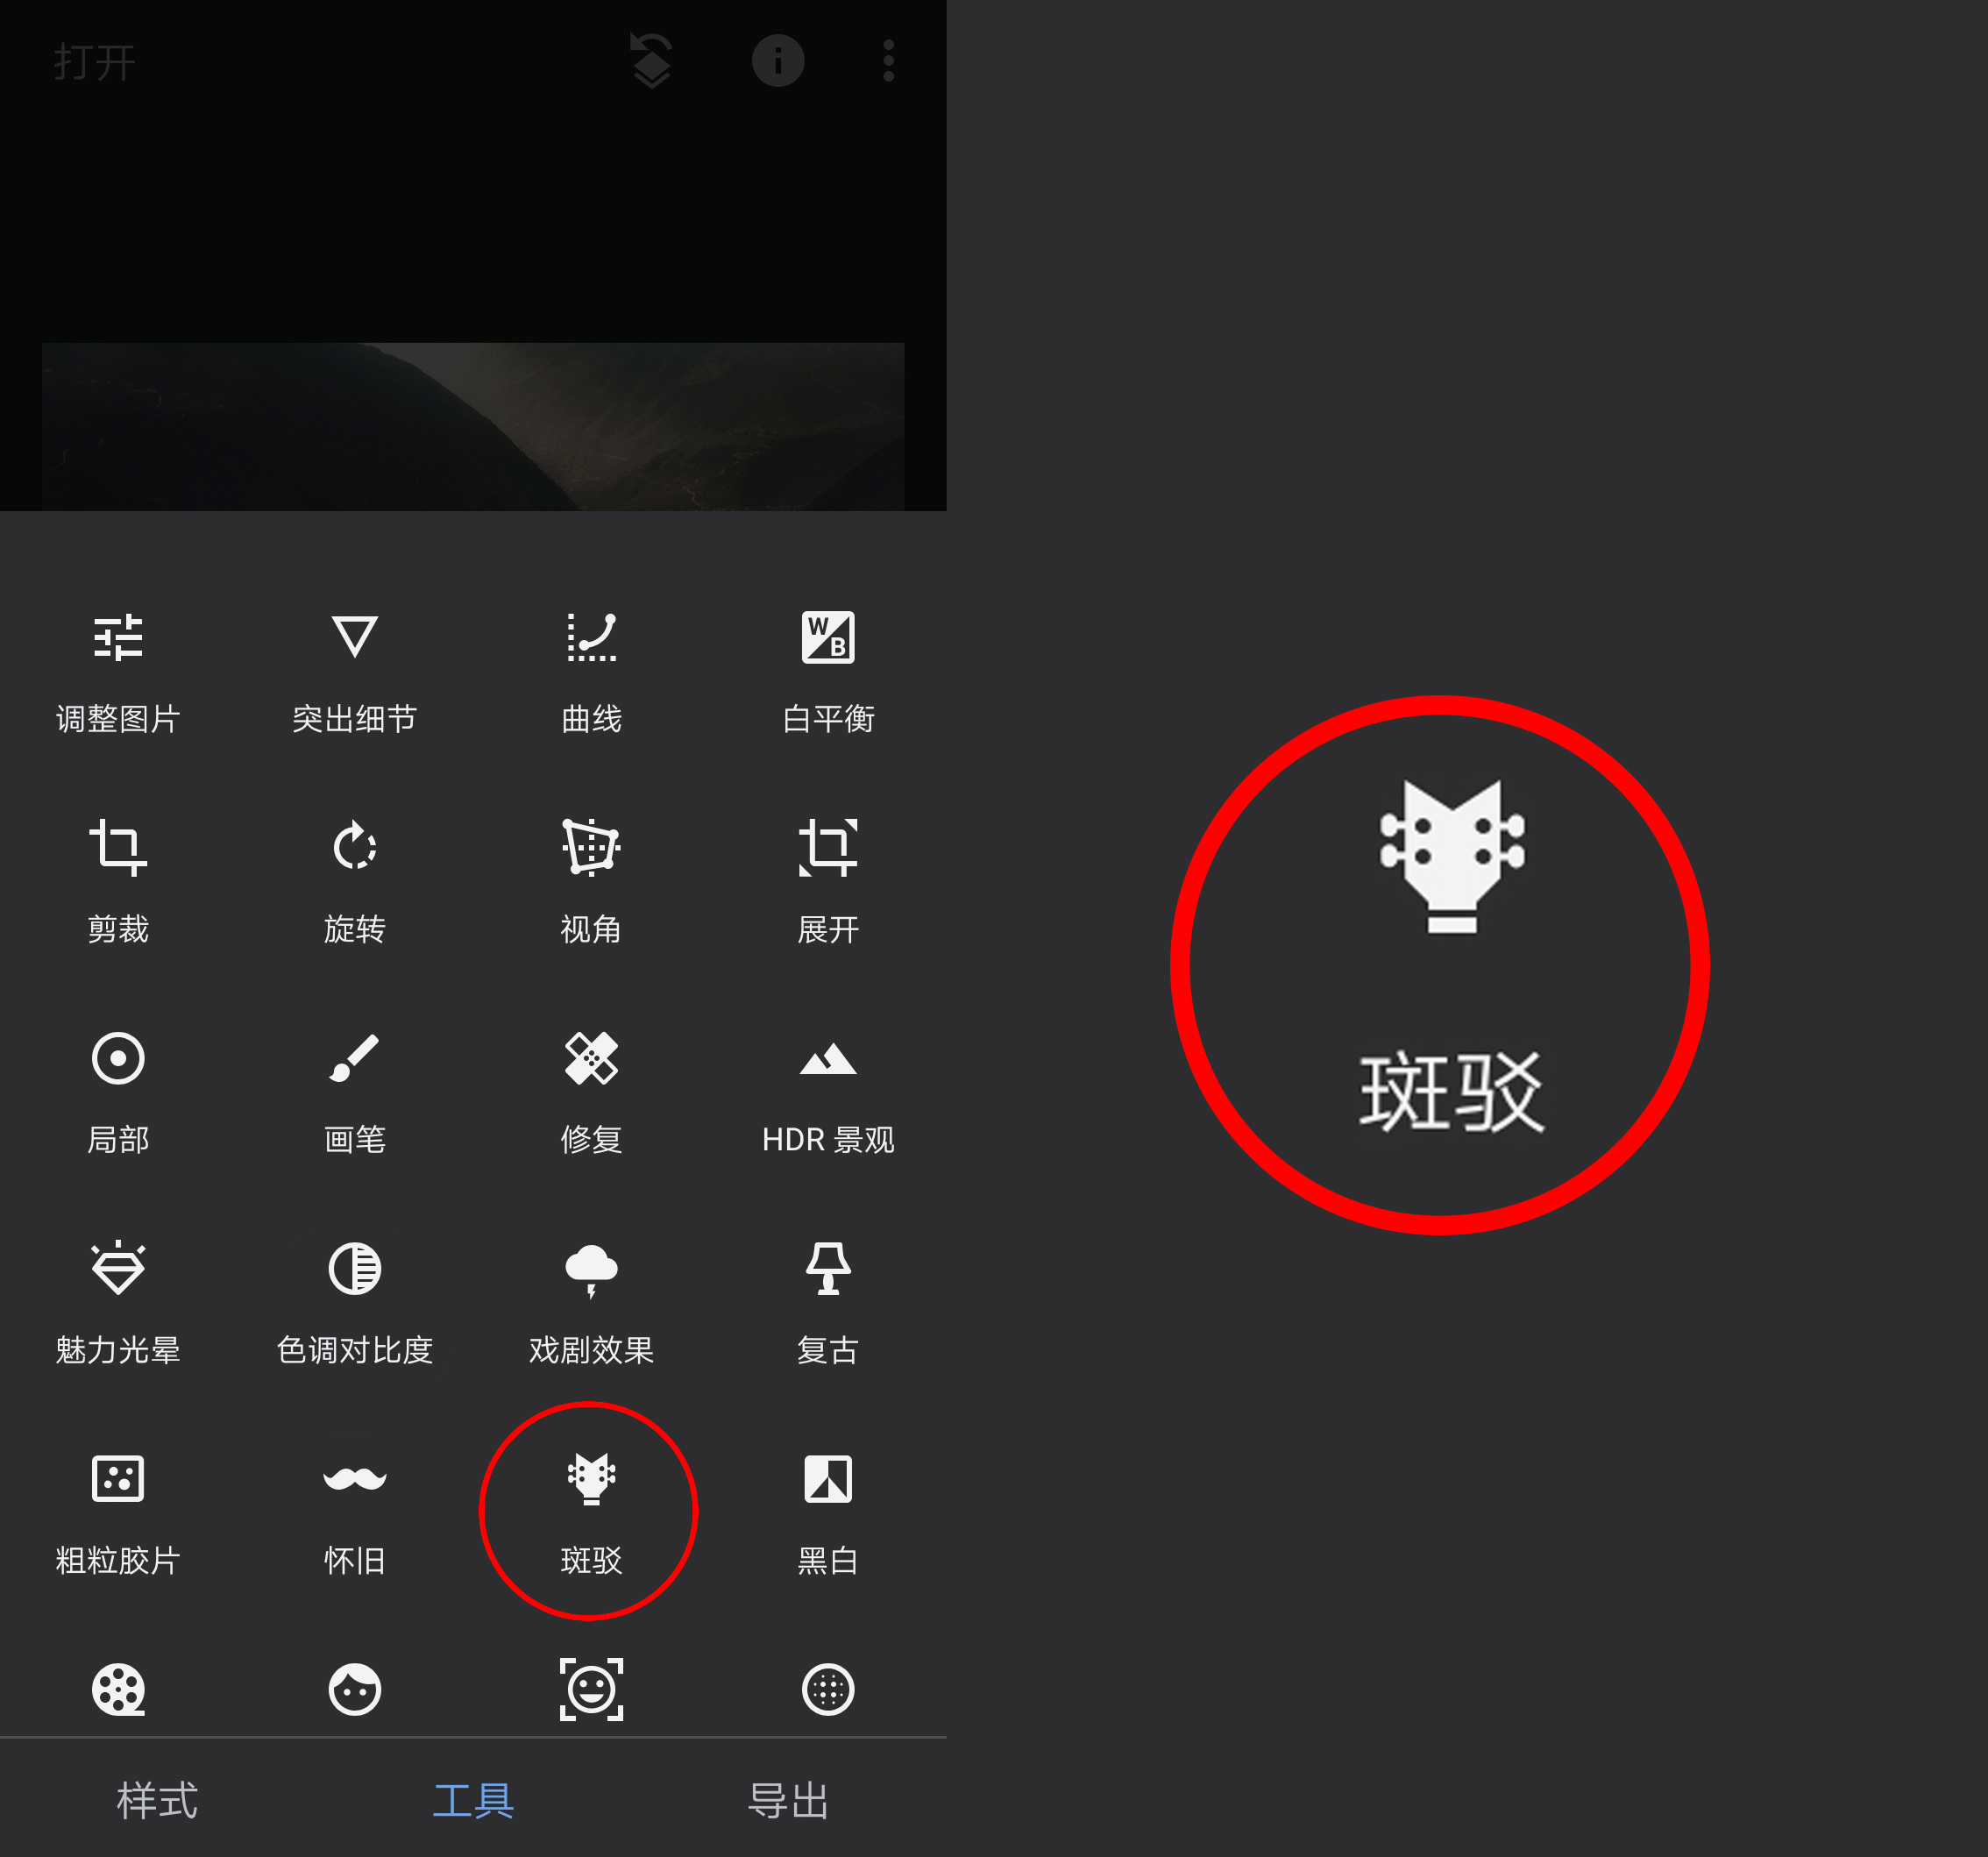 这个app的中文名字叫指划修图,不管是在安卓还是ios系统里都能下载